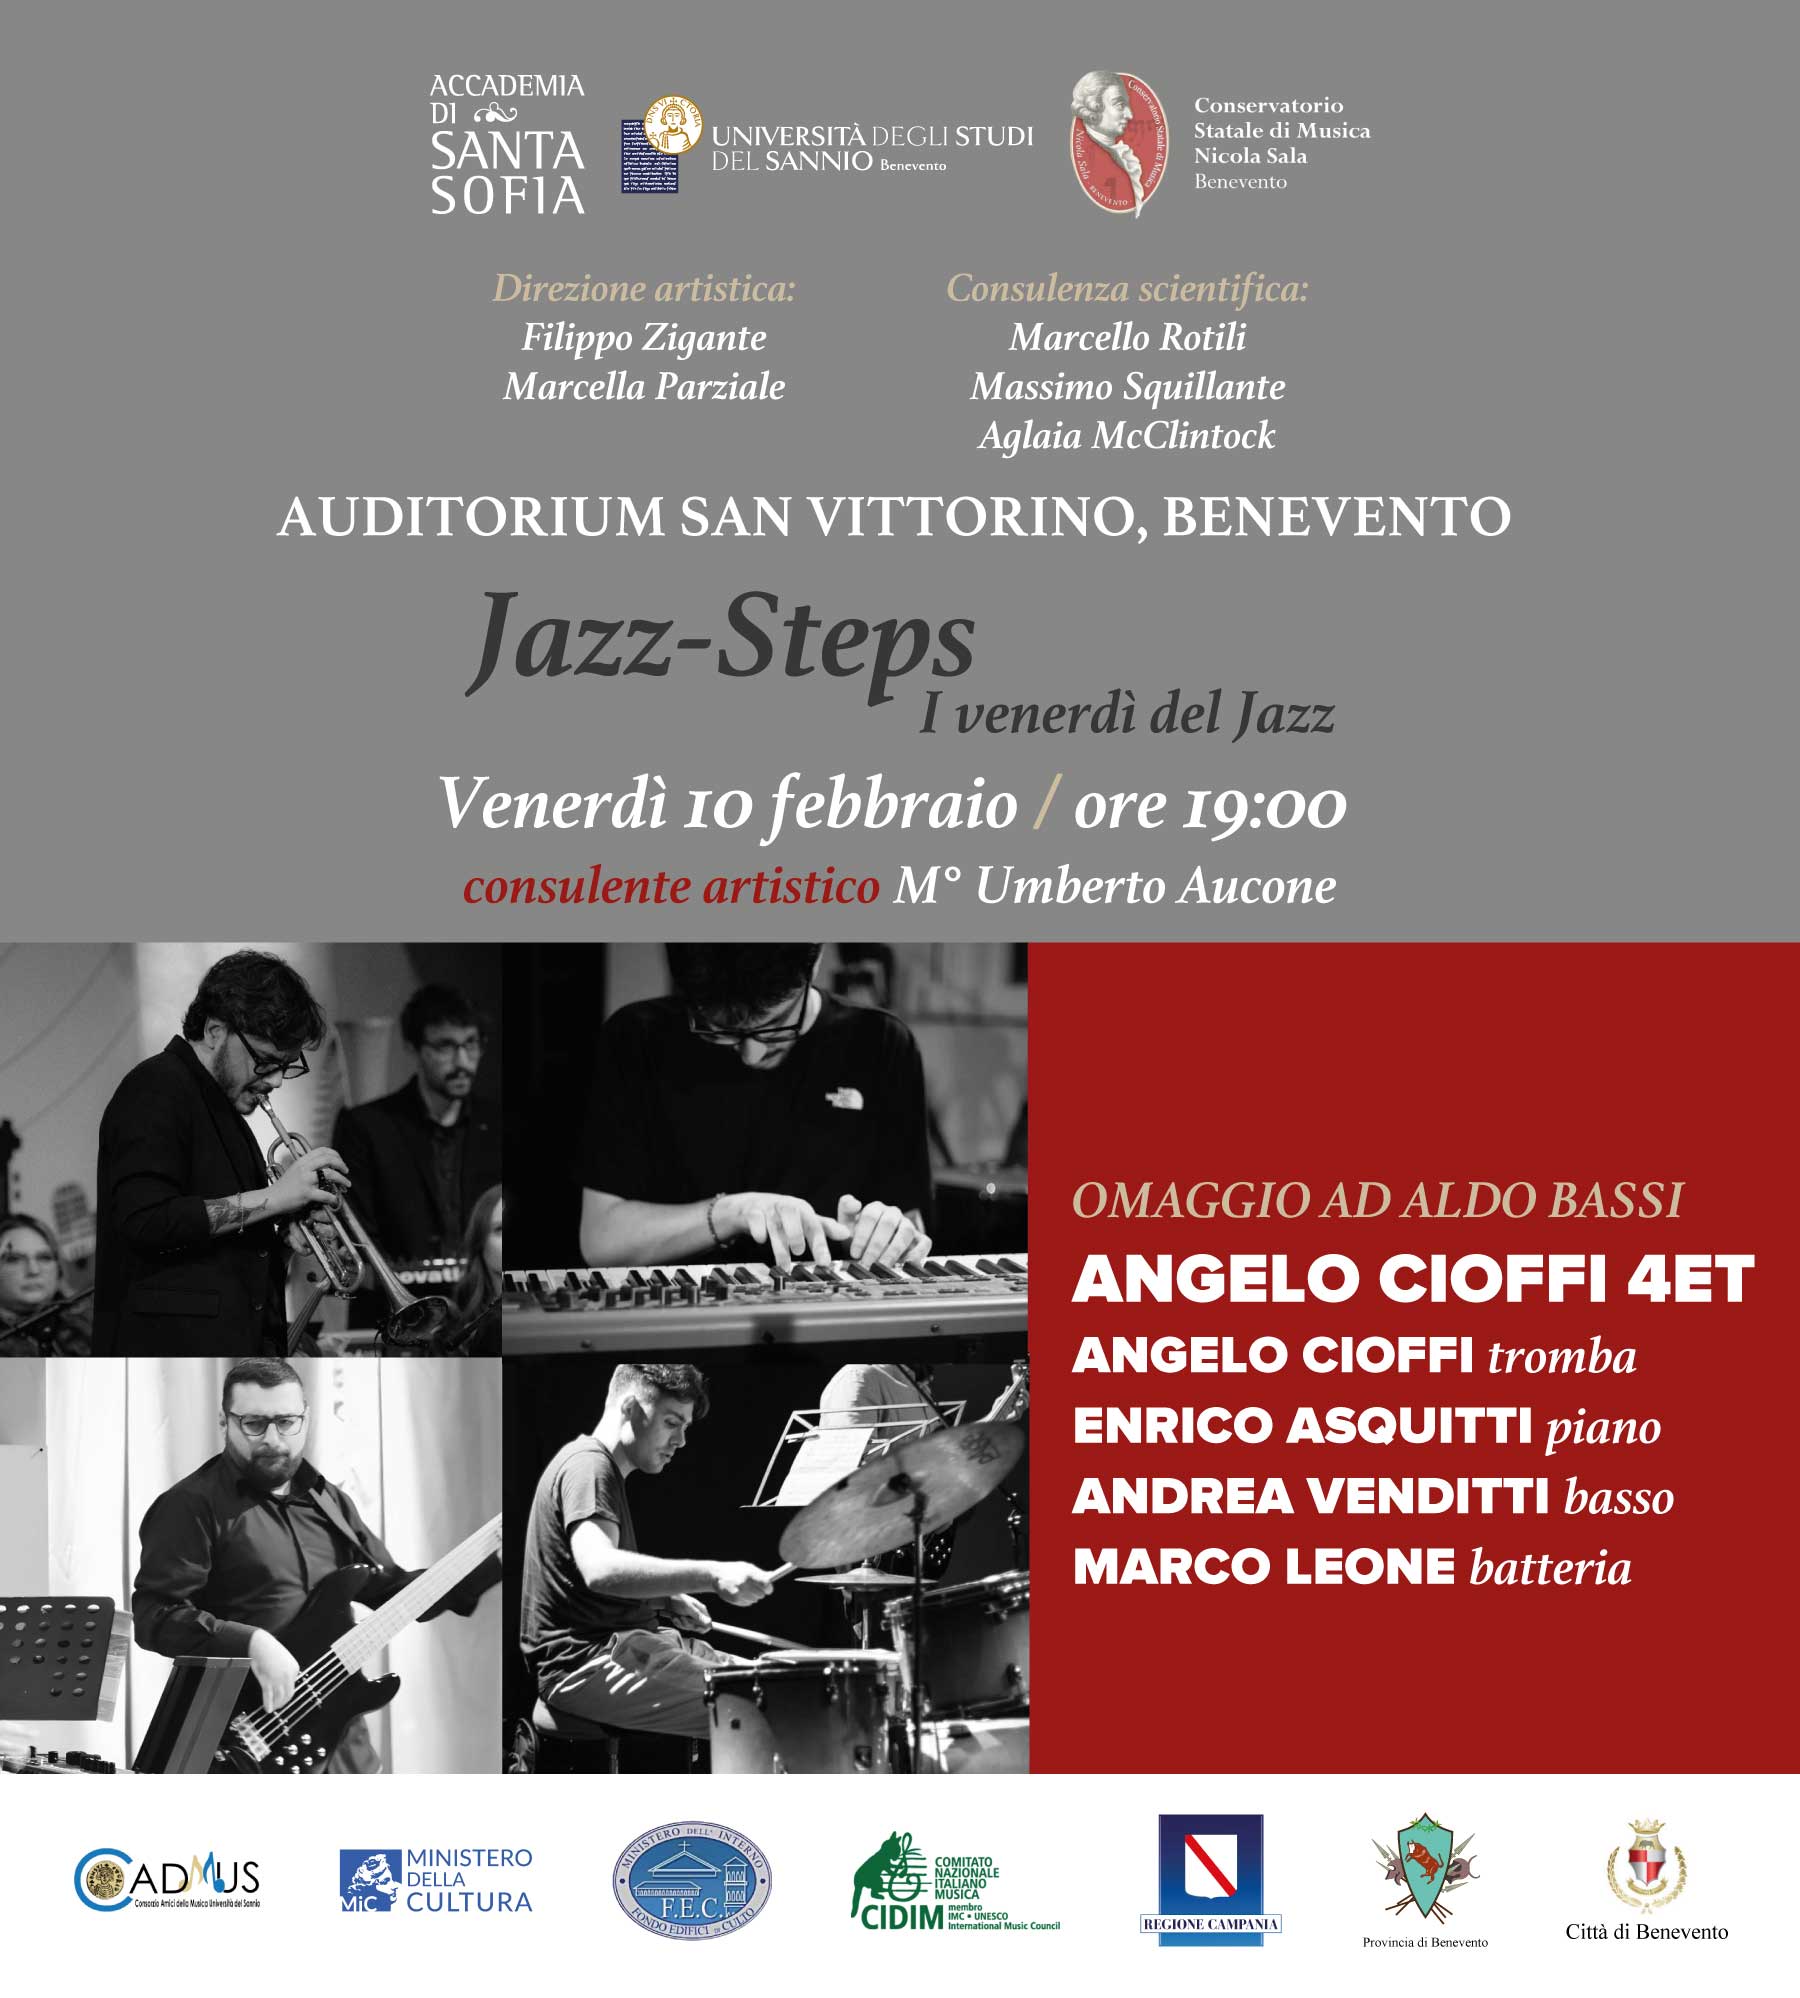 Venerdì 10 febbraio “Omaggio ad Aldo Bassi” nella rassegna Jazz Steps dell’Accademia di Santa Sofia